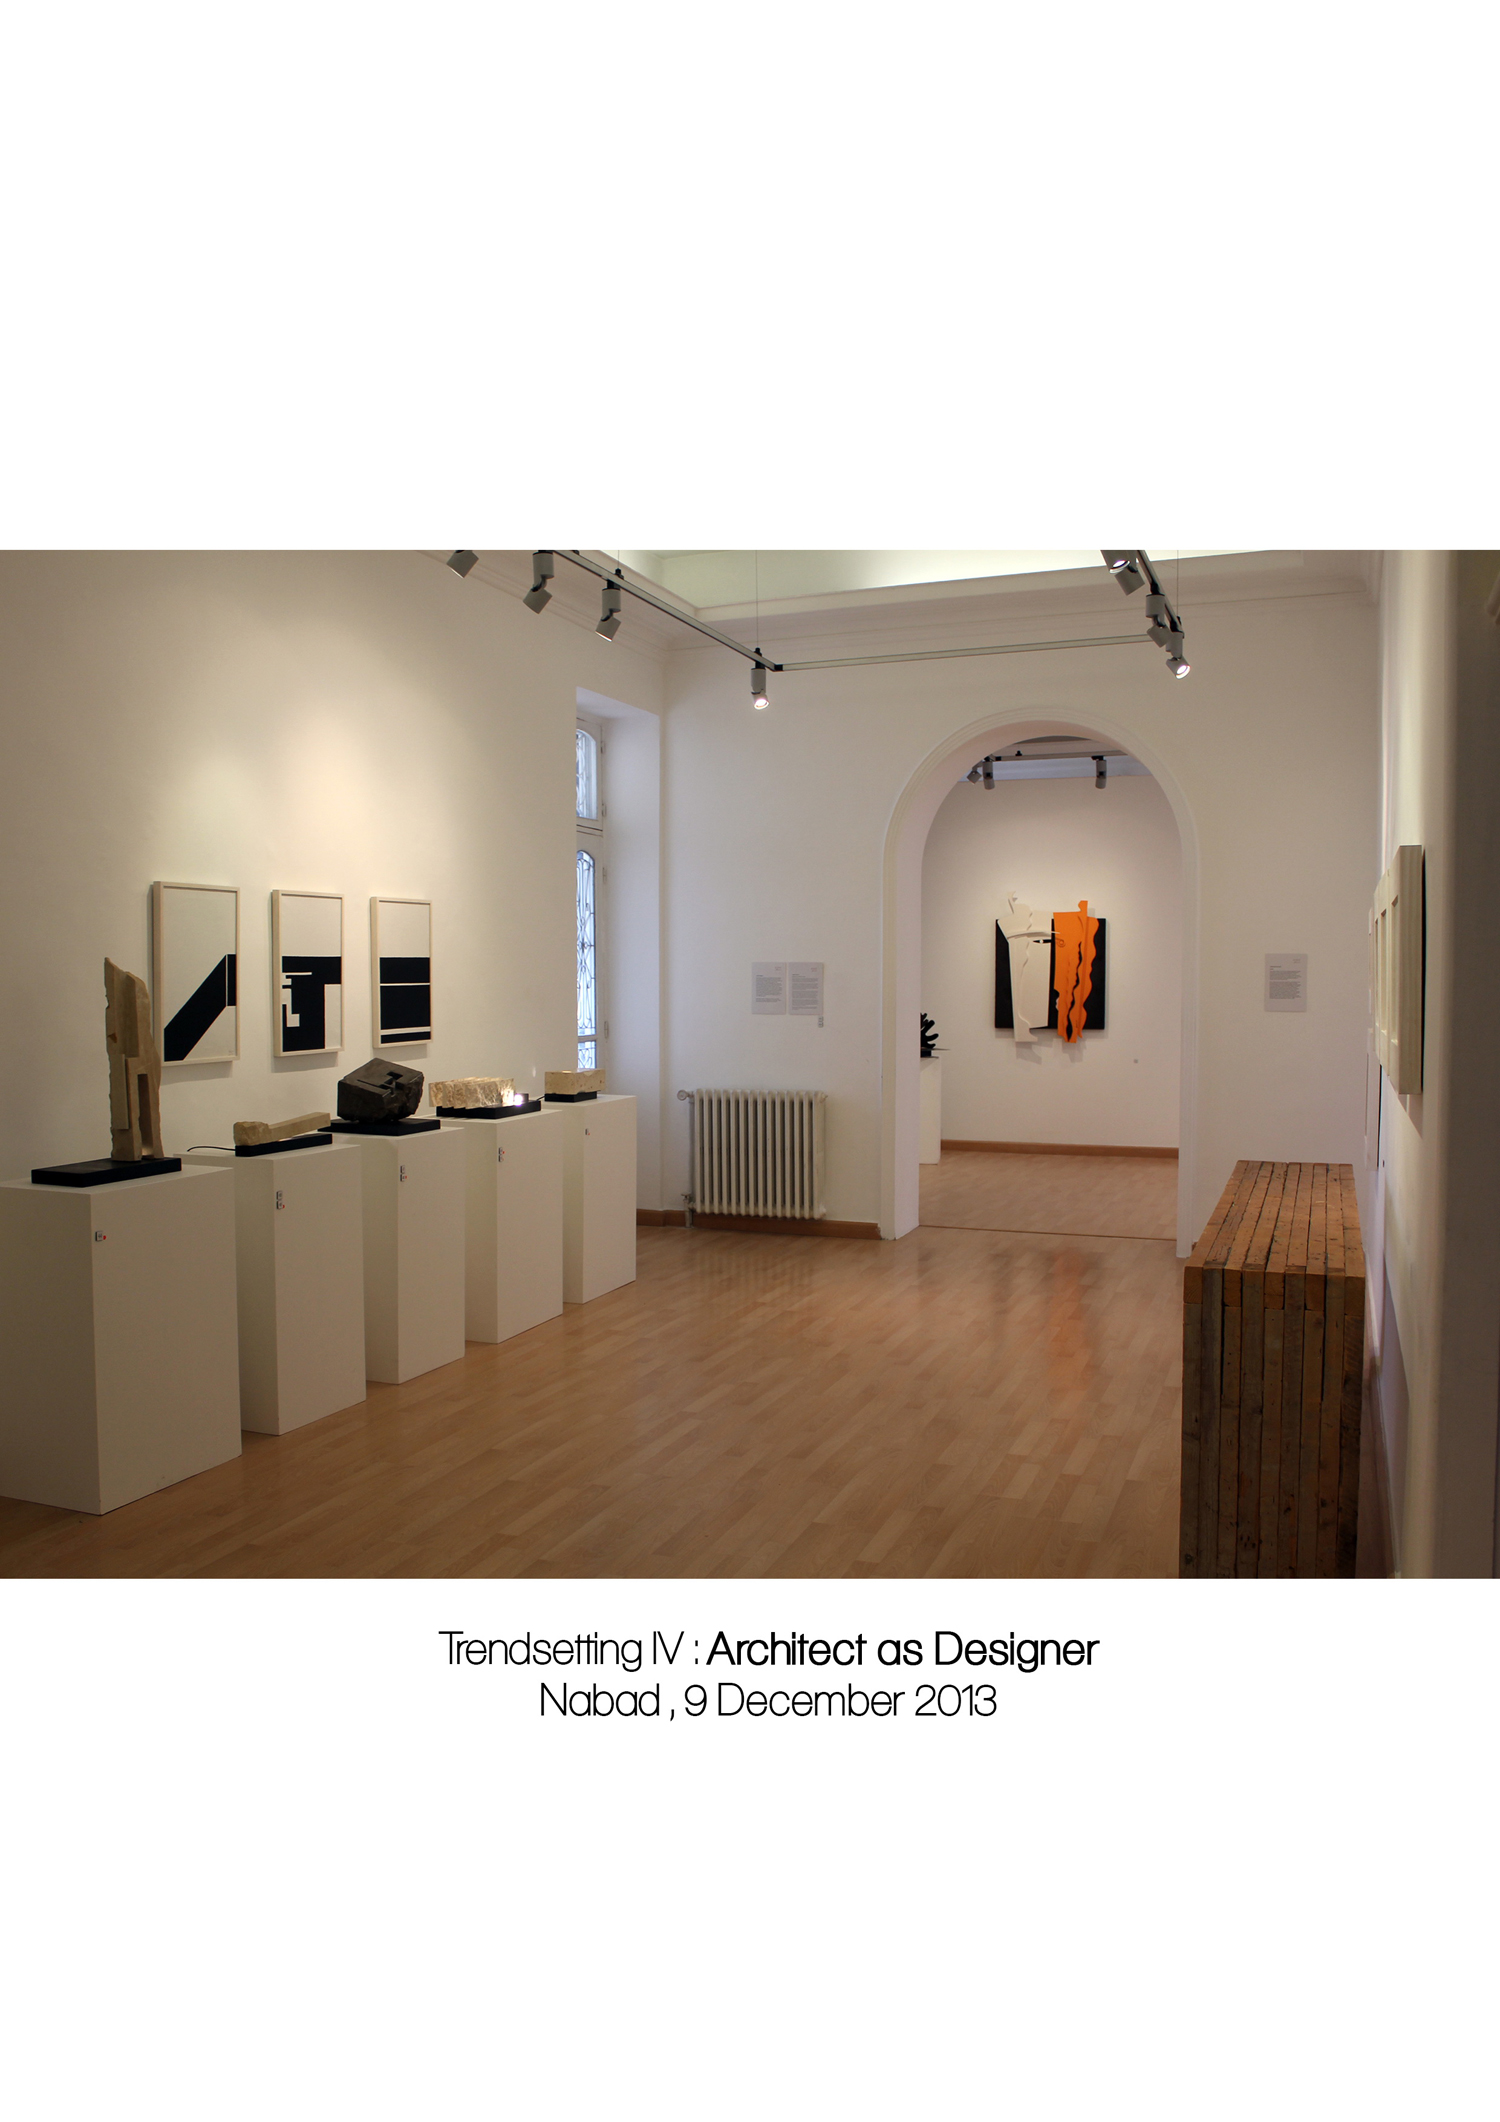 Gallery, exhibition